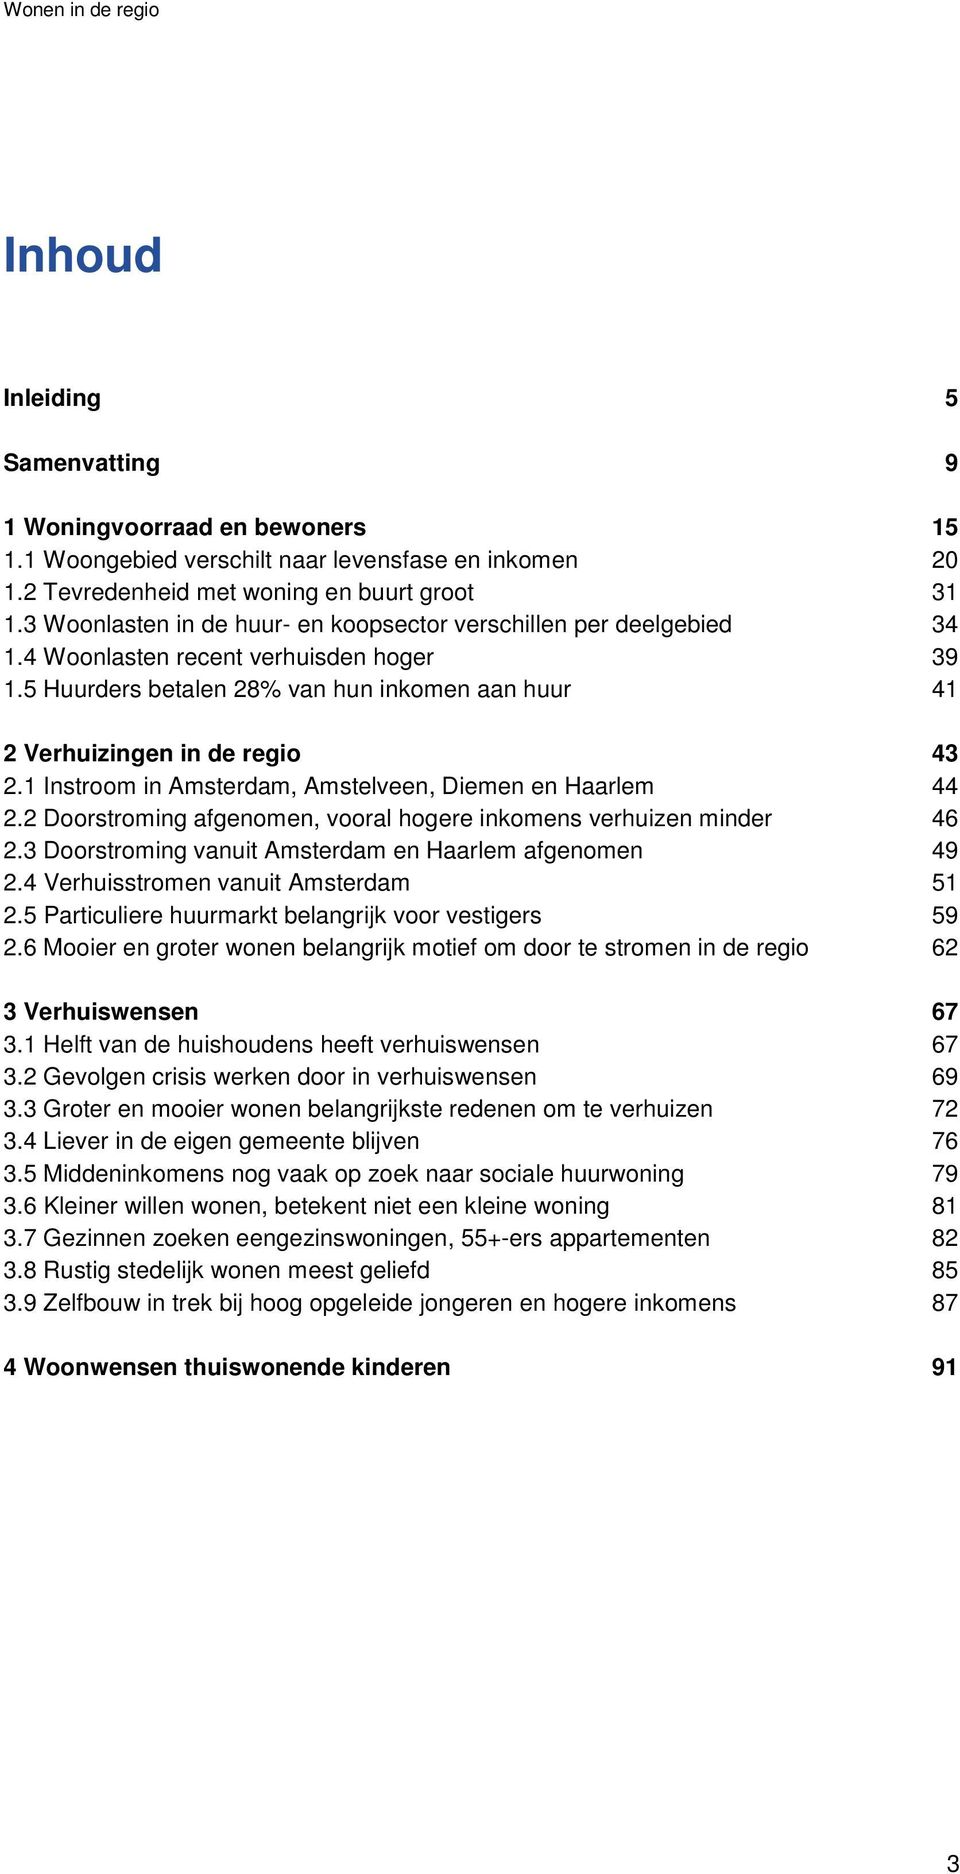 1 Instroom in Amsterdam, Amstelveen, Diemen en Haarlem 44 2.2 Doorstroming afgenomen, vooral hogere inkomens verhuizen minder 46 2.3 Doorstroming vanuit Amsterdam en Haarlem afgenomen 49 2.